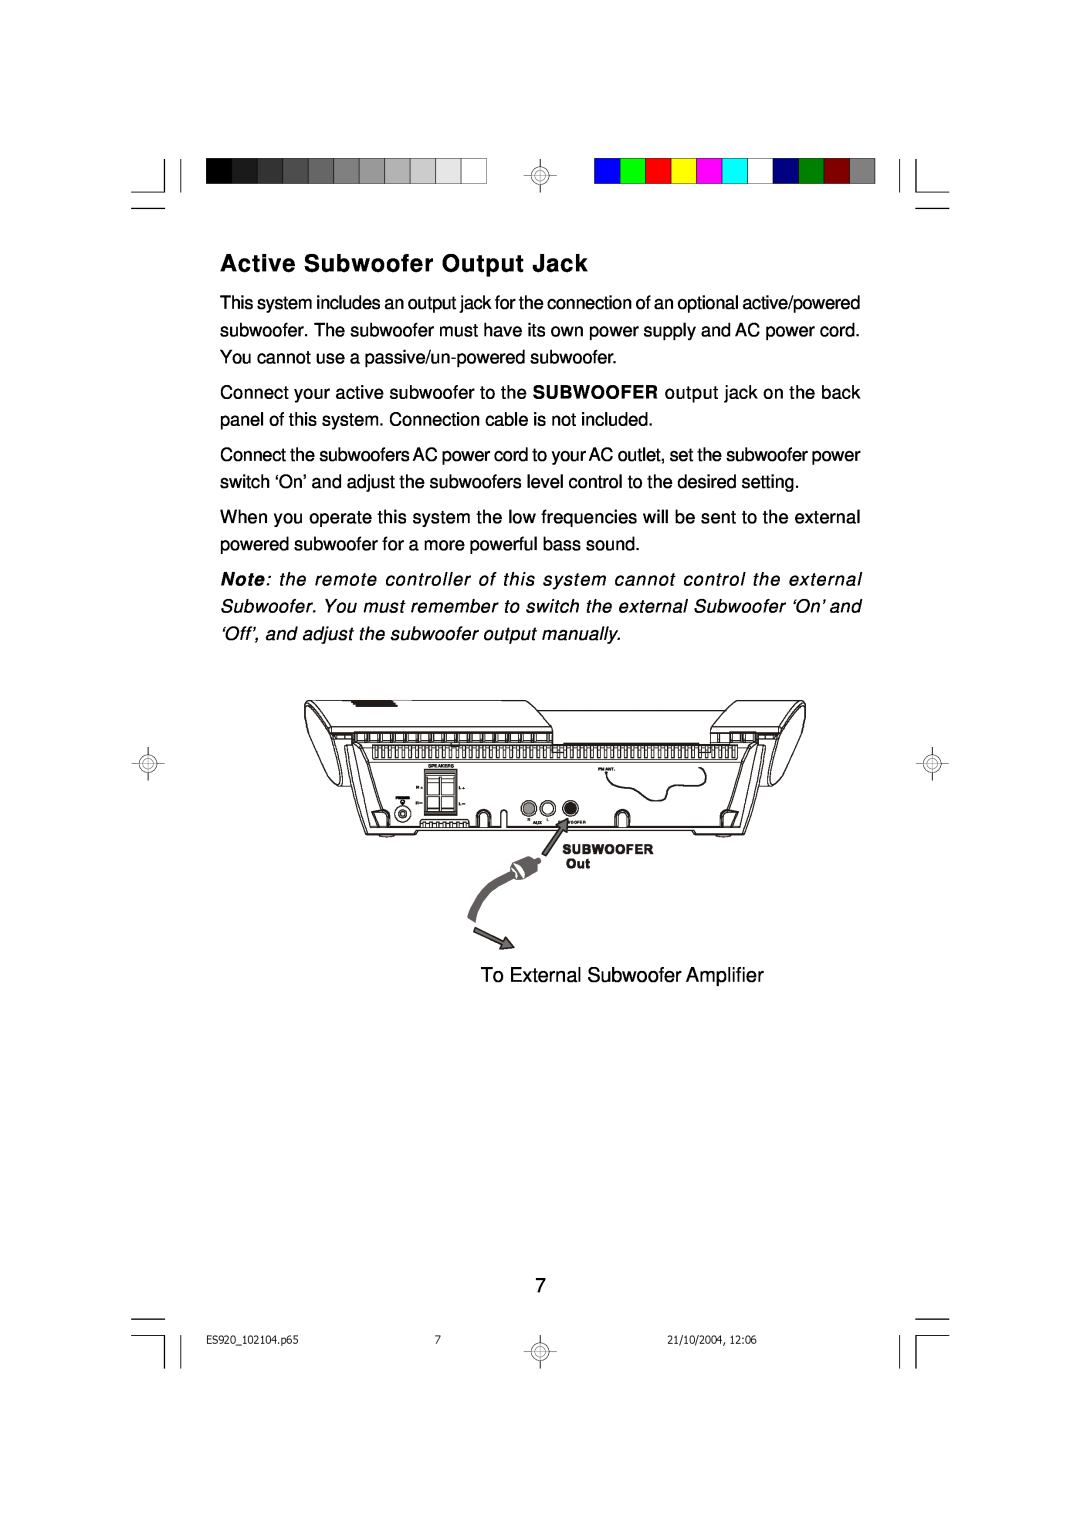 Emerson ES920 owner manual Active Subwoofer Output Jack, To External Subwoofer Amplifier 